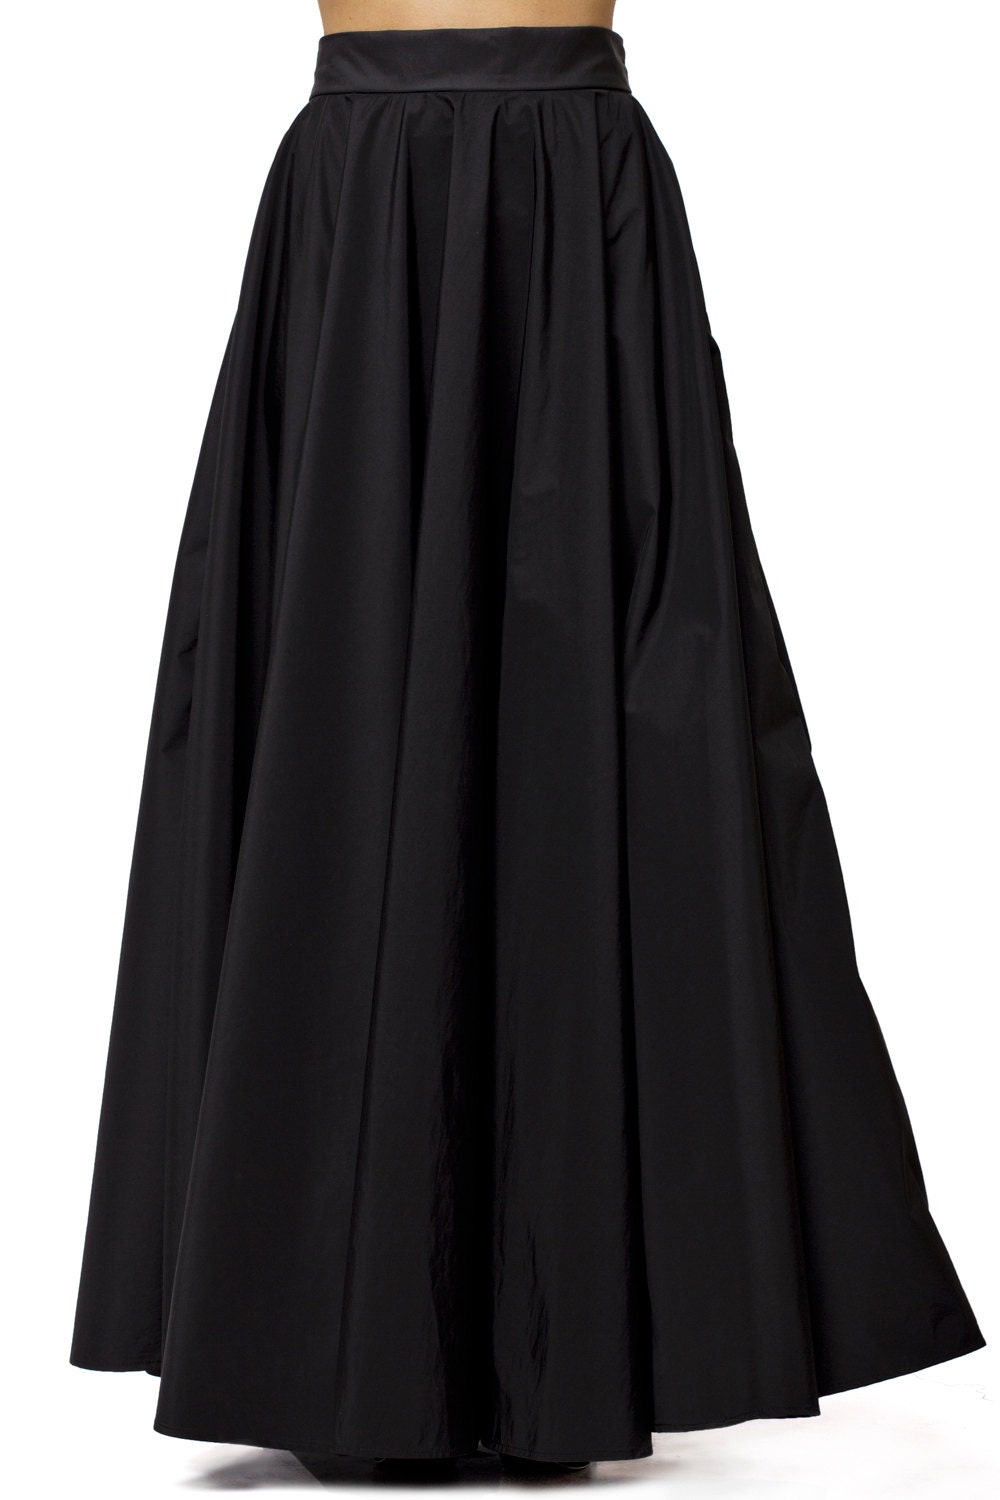 Maxi Black Skirt / Long Black Skirt / High Waist A Line Skirt